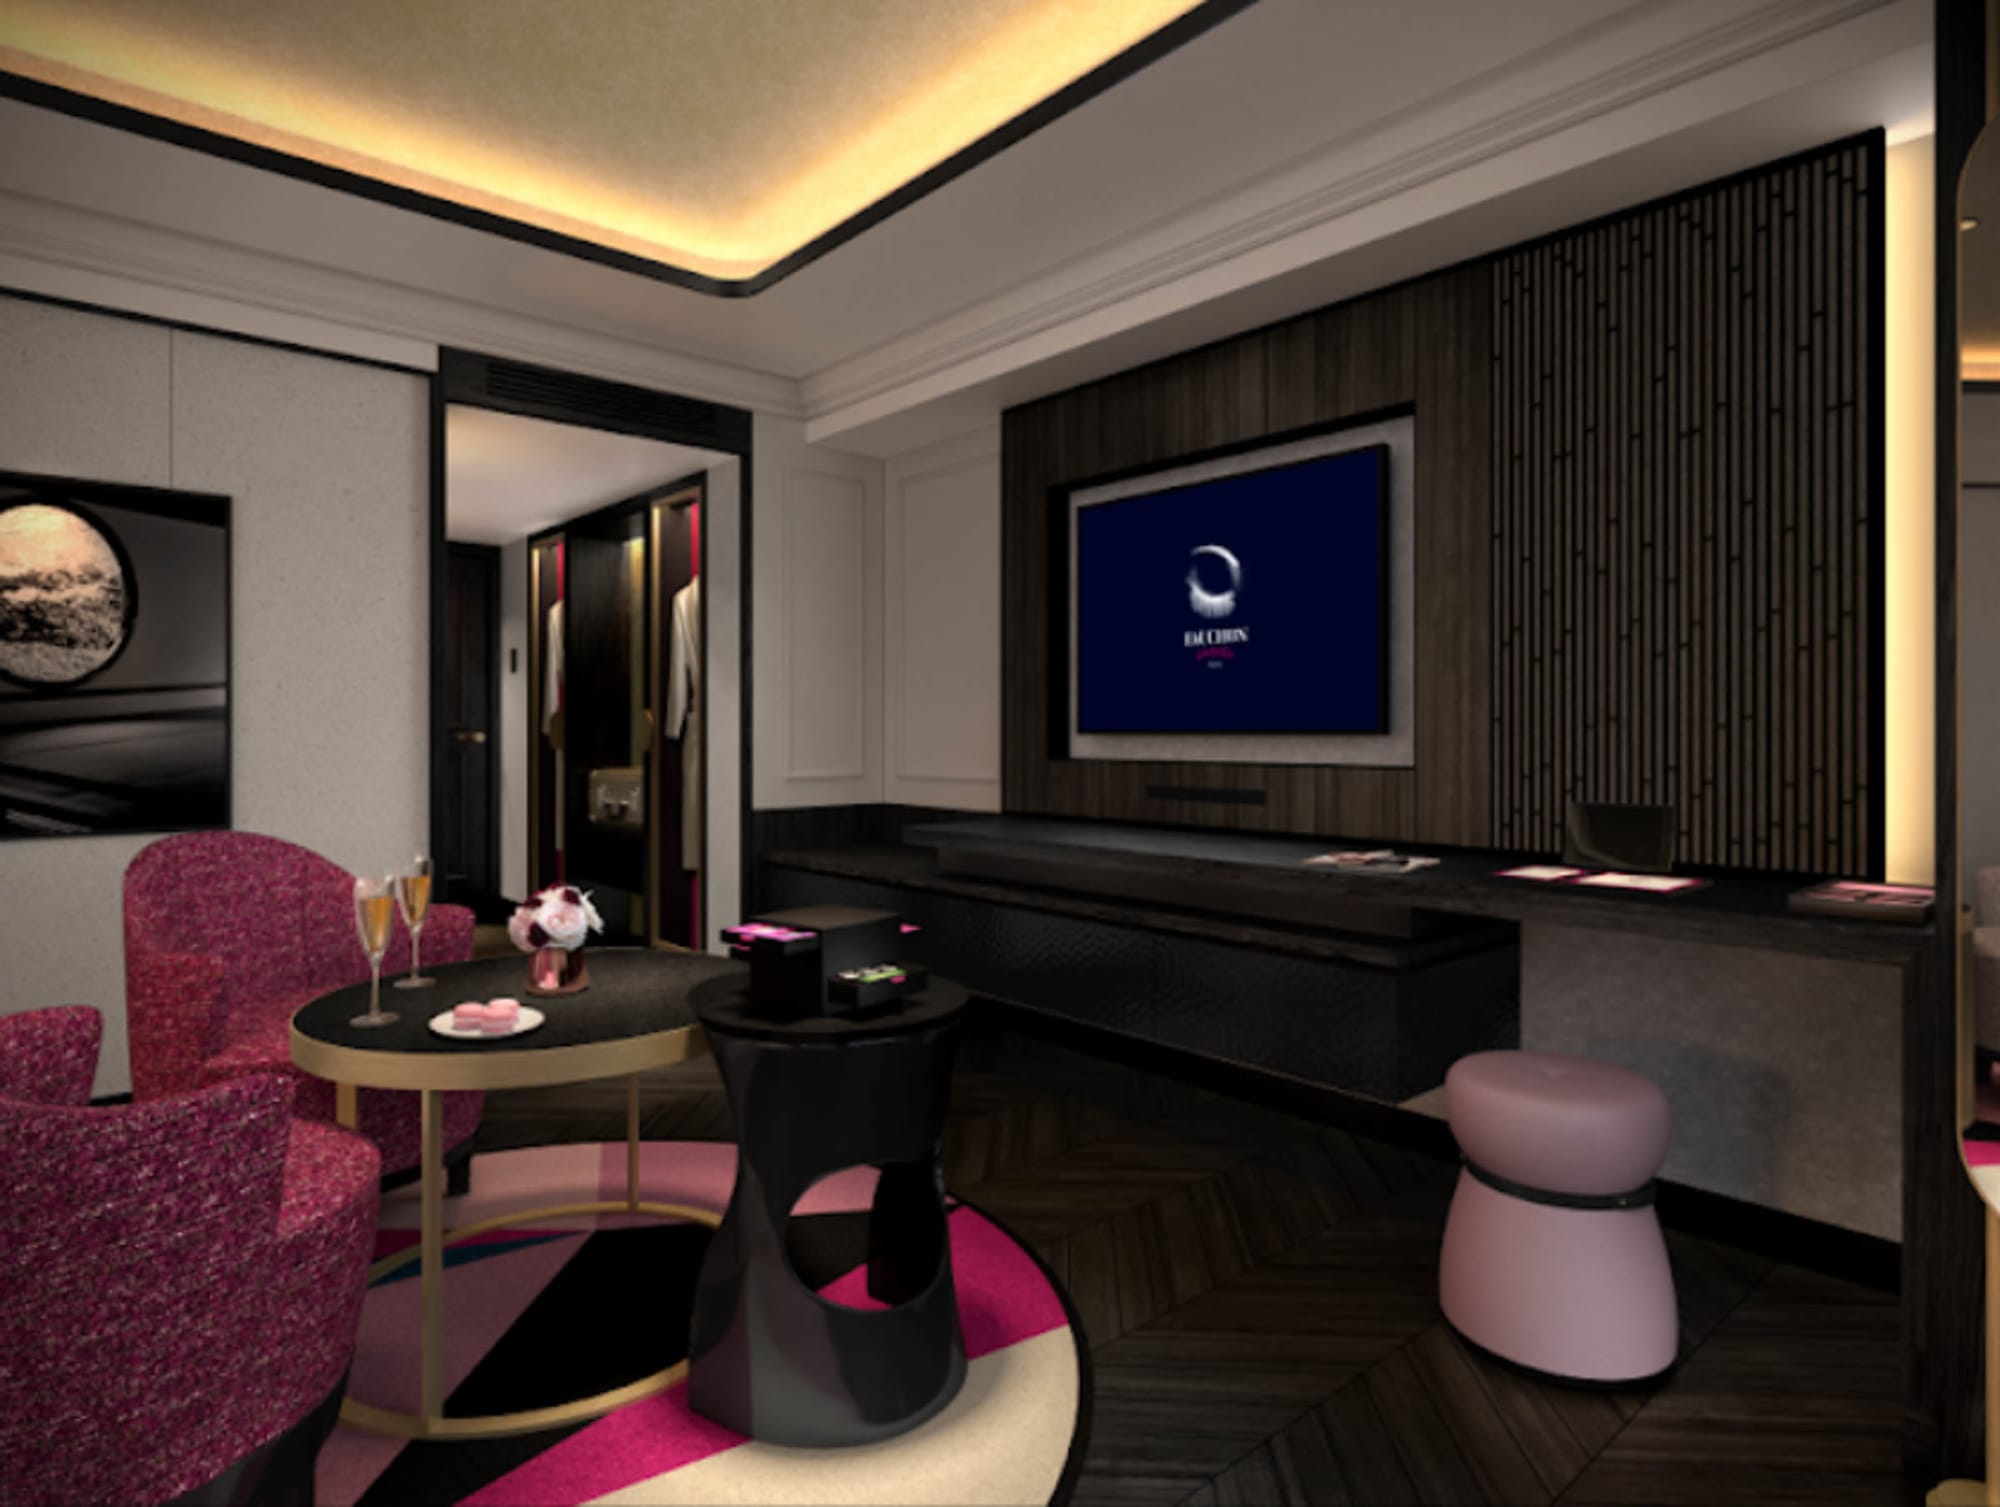 ホテル 京都 フォション 【フォションホテル京都宿泊記2021】マカロンも魅力の華やかでかわいらしいピンクのホテル、開業日のリポート